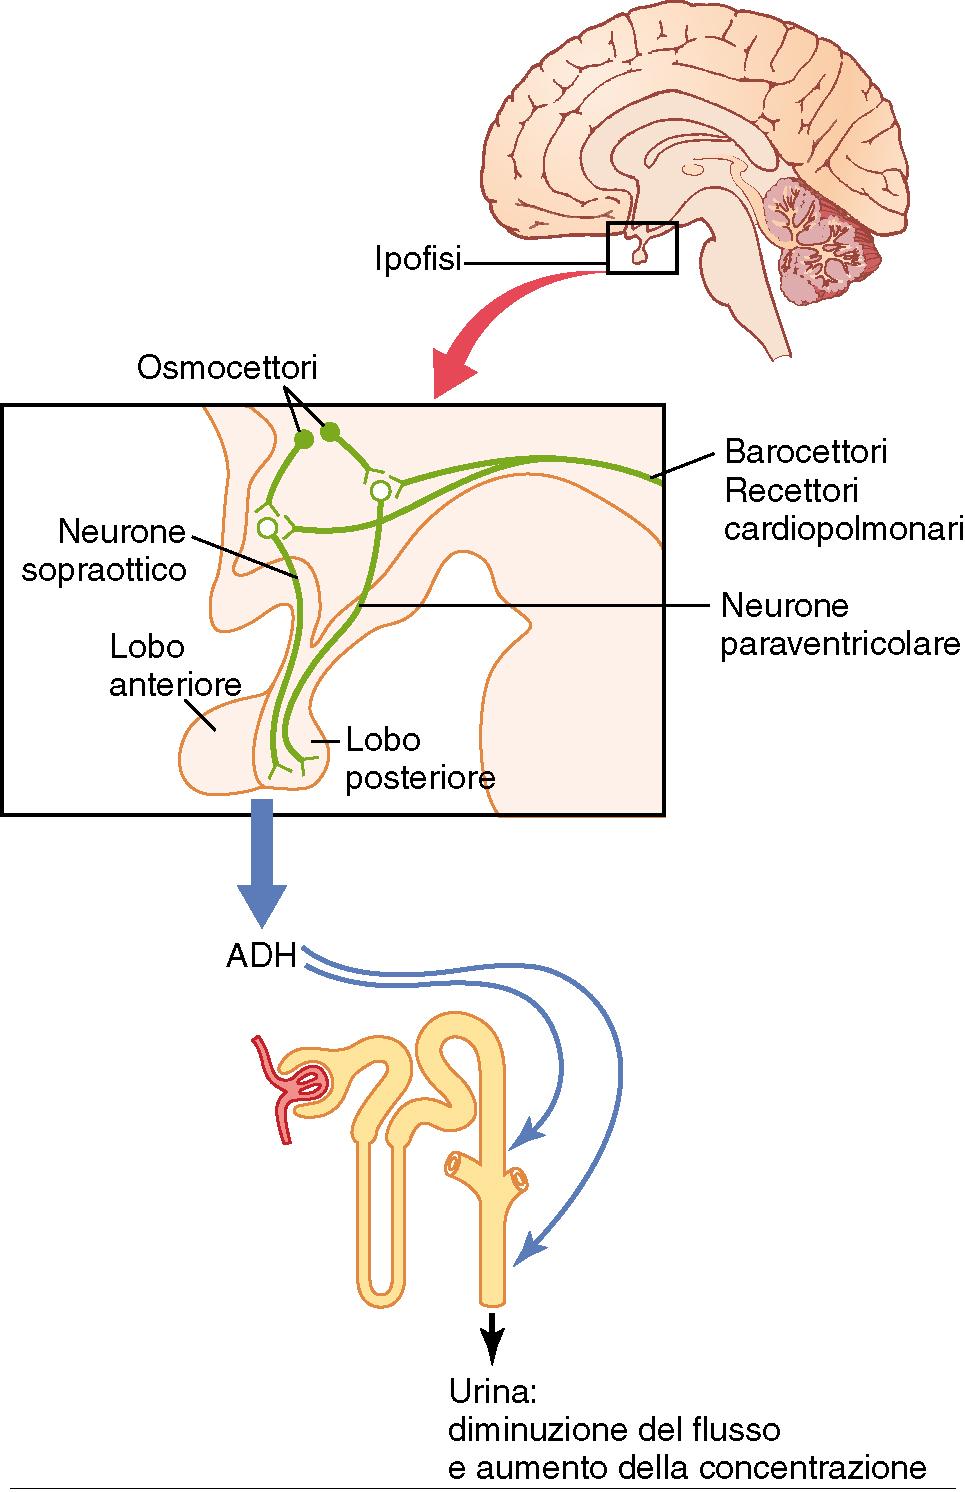 Anatomia e connessioni nervose dell ipotalamo (sede di produzione dell